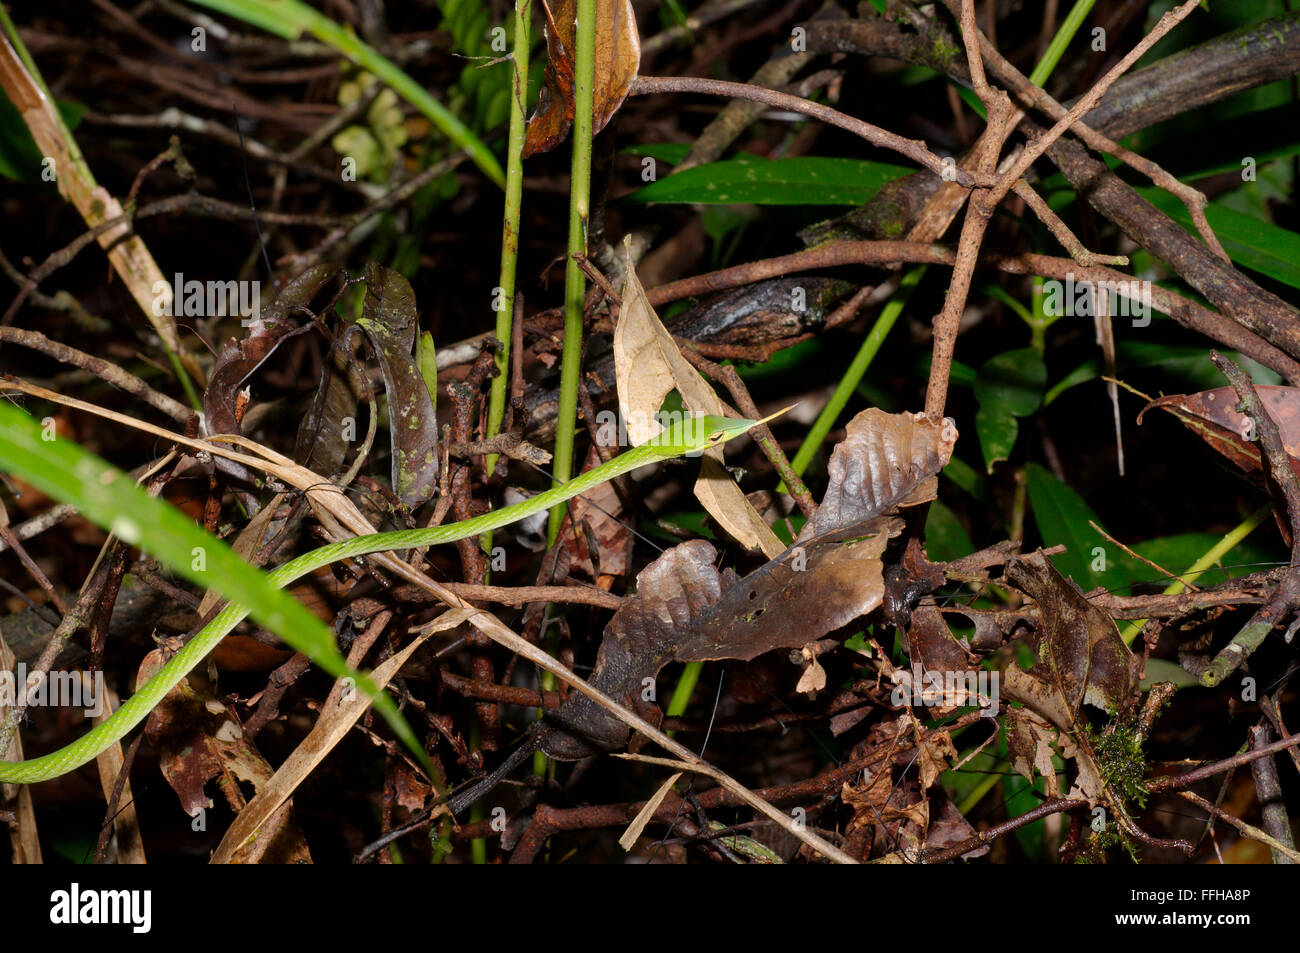 Arbre généalogique bec long serpent, serpent de vigne verte, Whip bec long serpent ou serpent de vigne asiatique (Ahaetulla nasuta) la réserve forestière de Sinharaja, Banque D'Images